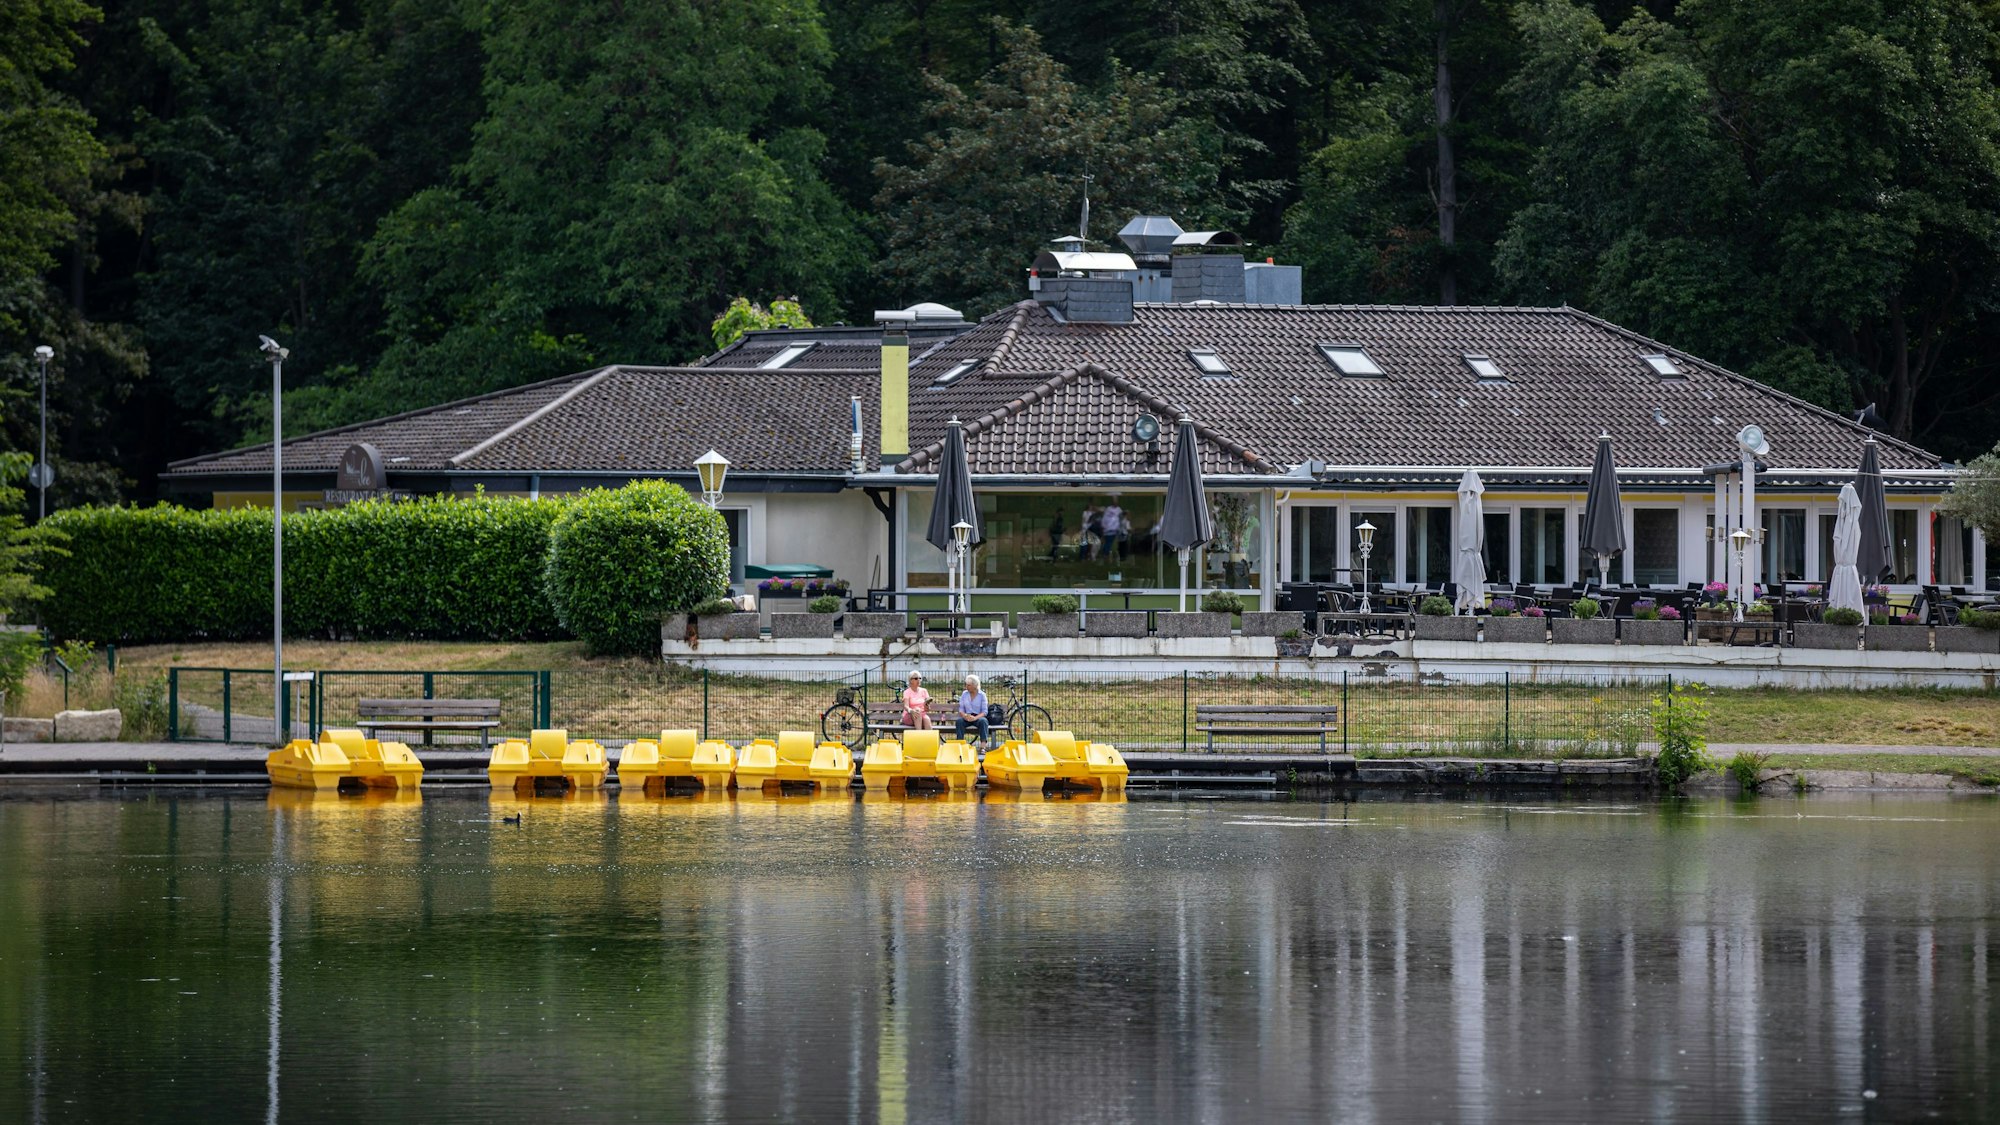 Zwei Personen sitzen auf einer Bank am Tretbootverleih am Decksteiner Weiher, während im Hintergrund das Restaurant „Haus am See“ zu sehen ist.